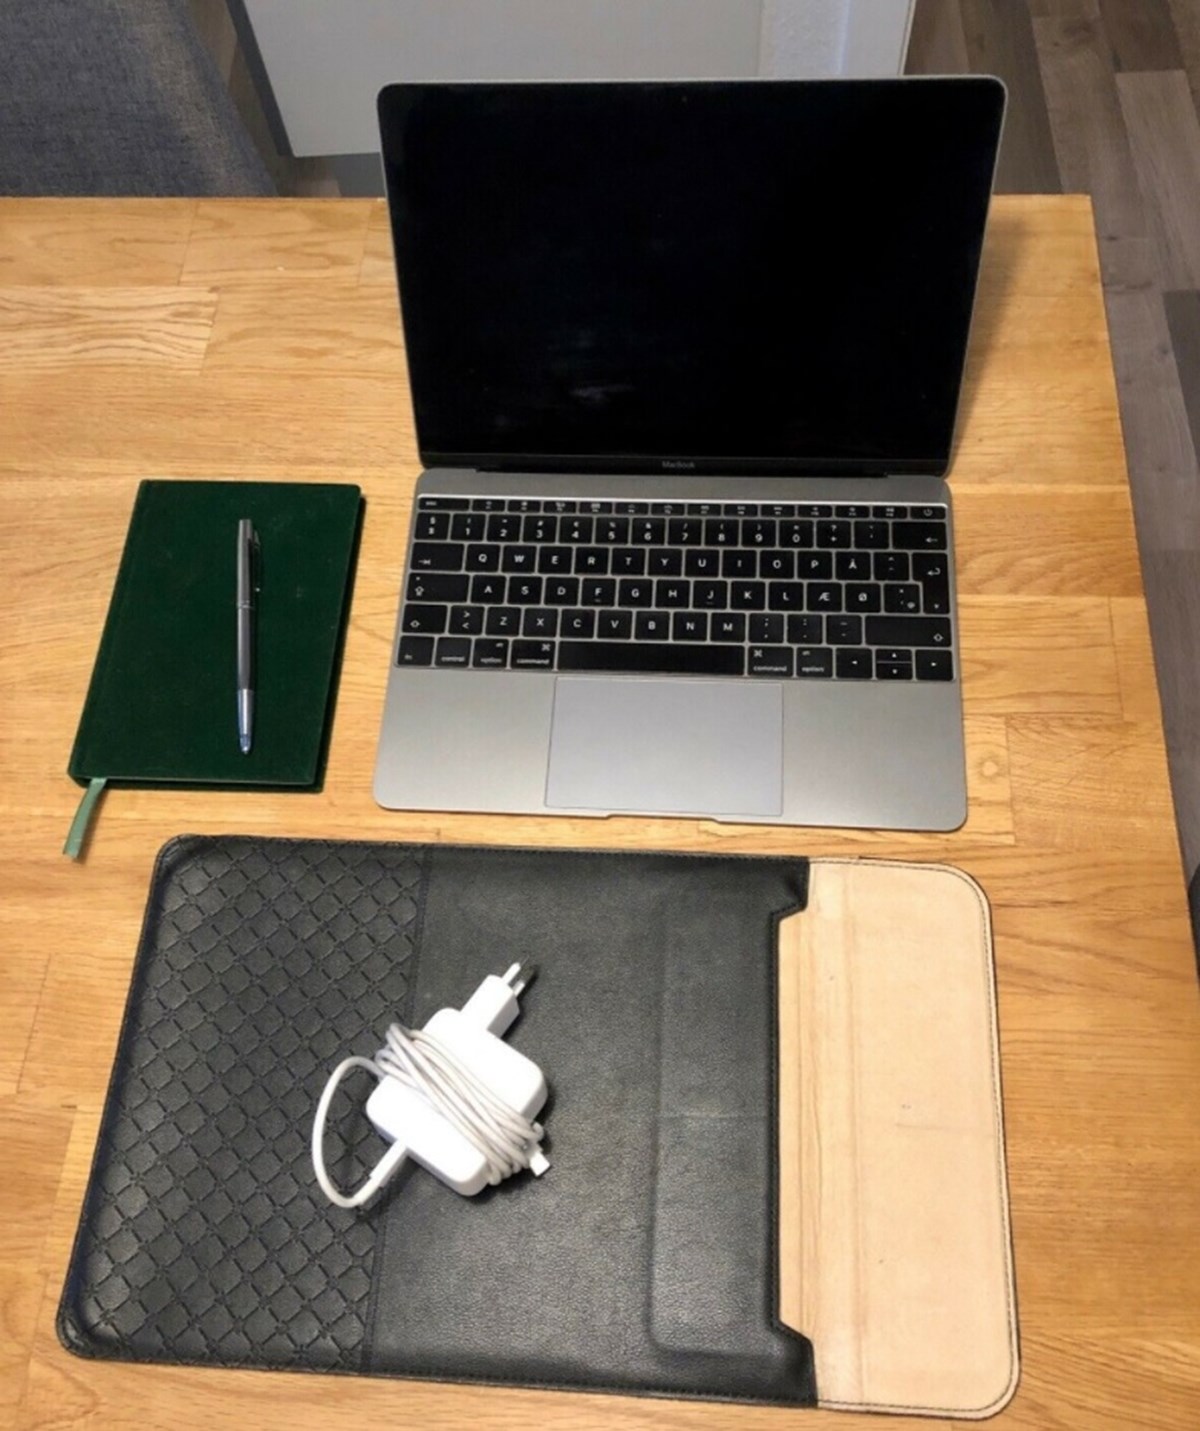 : I København N har Henrik denne Macbook til salg. Han håber at få 4.600 kroner i bytte for den. Macbooken er en12” Retina (Early 2016) med 1.1 GHz